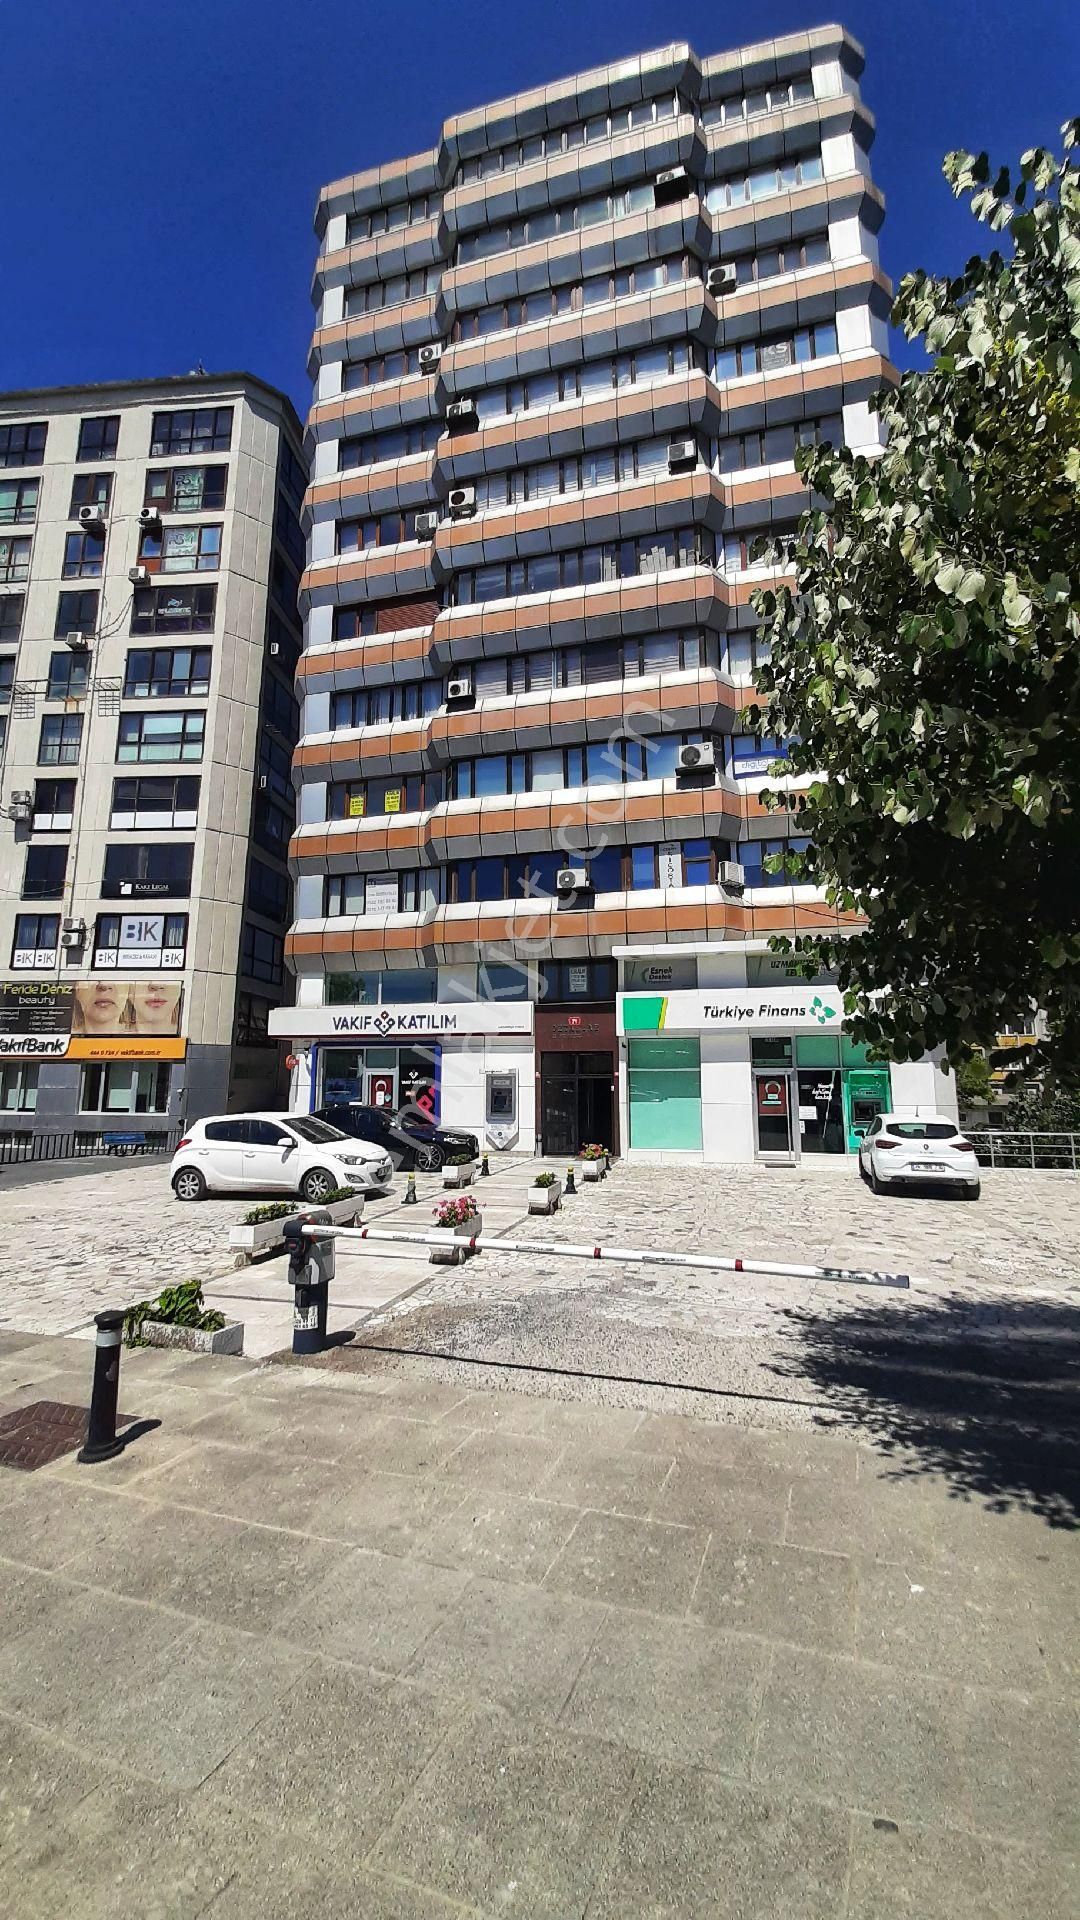 İstanbul Kadıköy Kiralık Büro Kadıköy Evlendirme Dairesi Karşısı İçi Yapılı Masrafsız Ofis